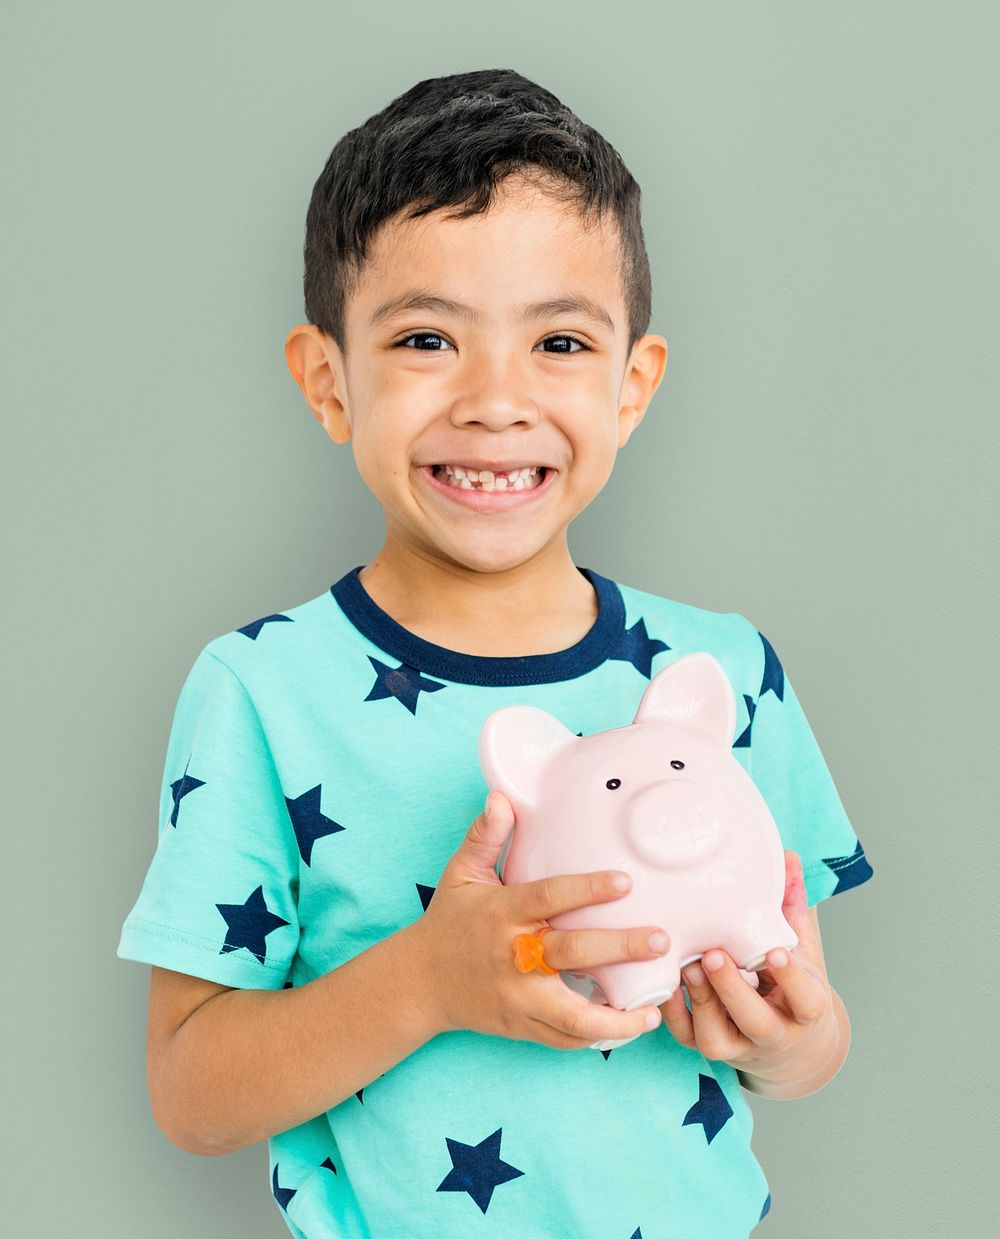 Little Boy Piggy Bank Concept